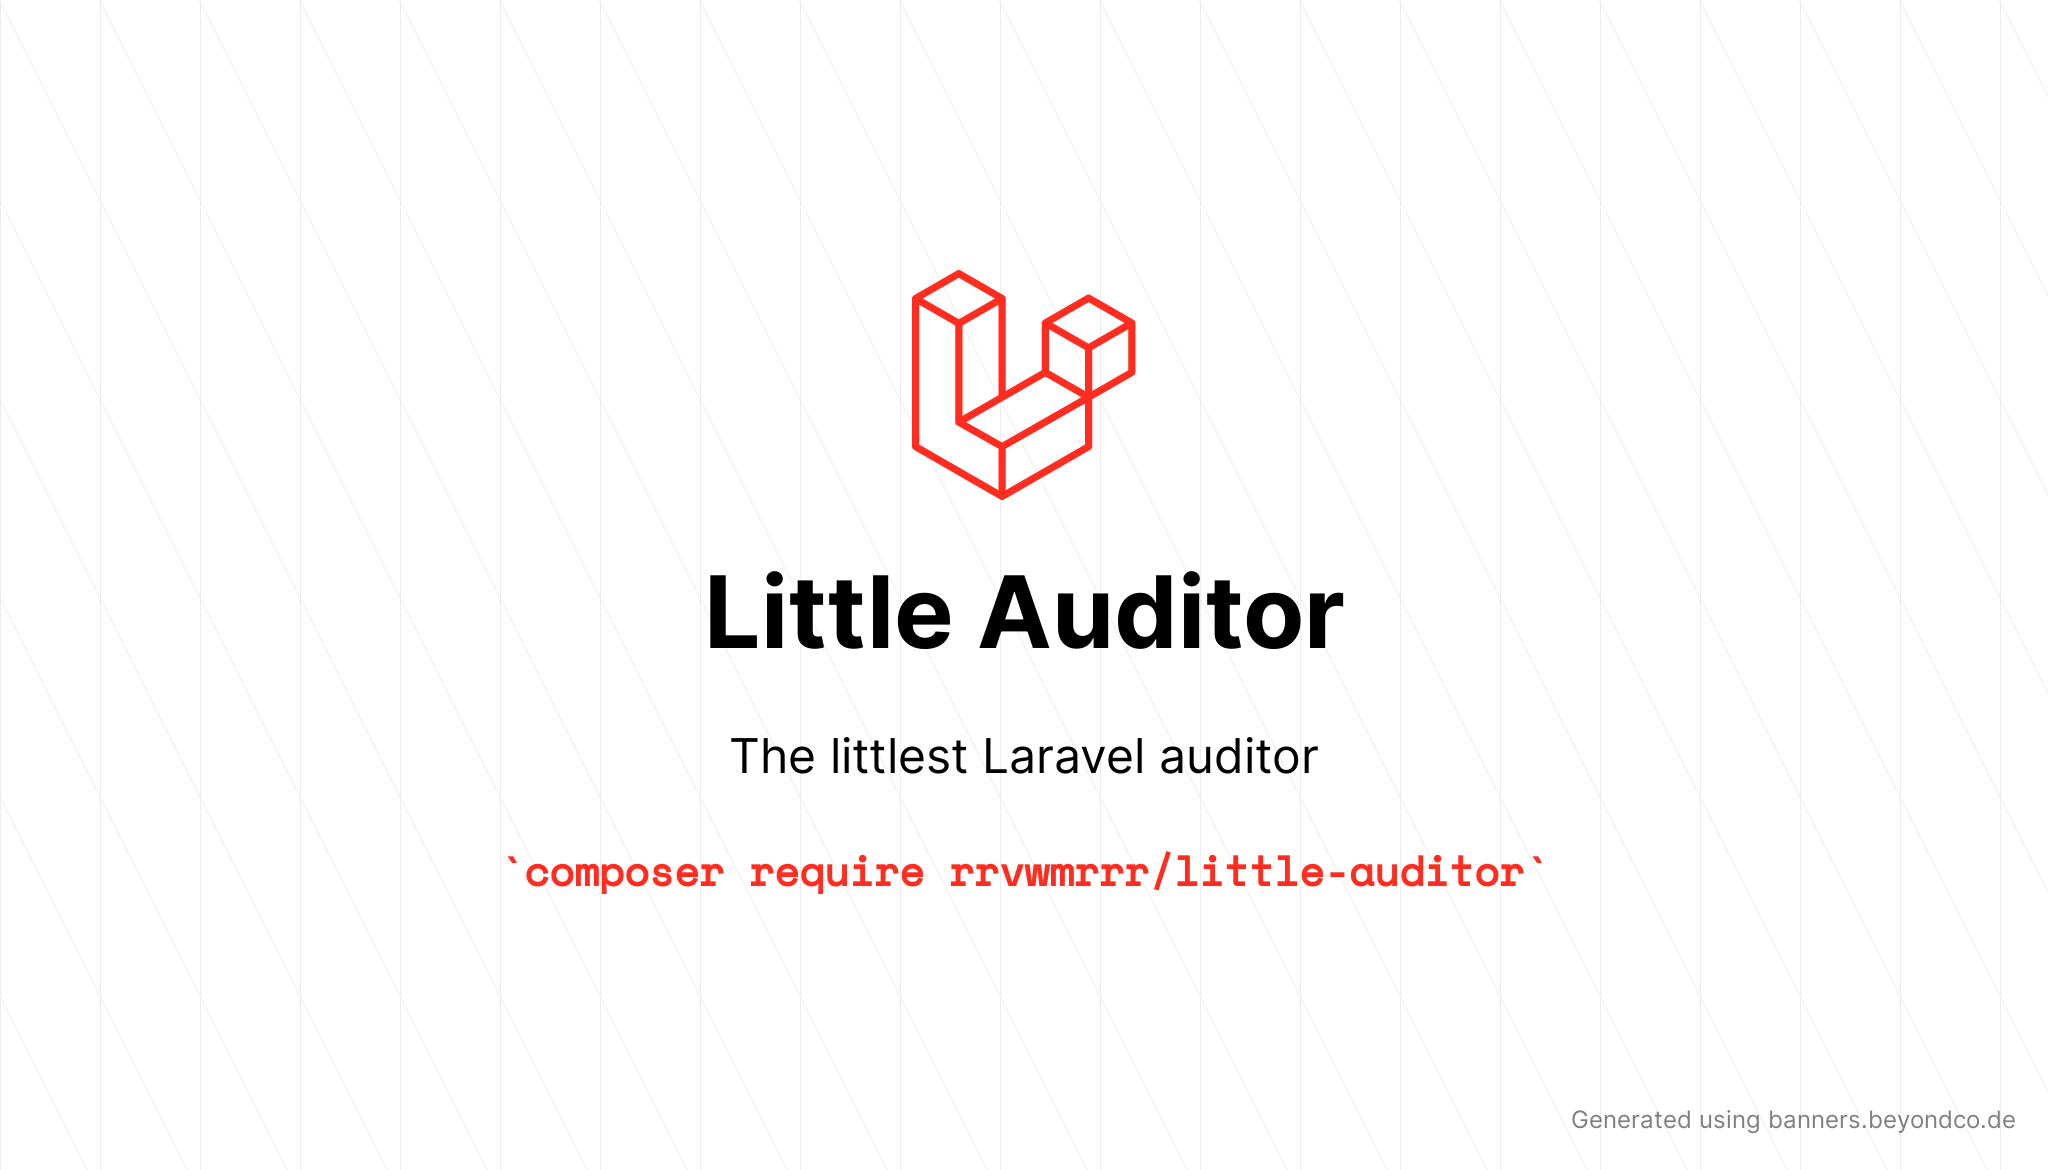 Little Auditor - The littlest Laravel auditor